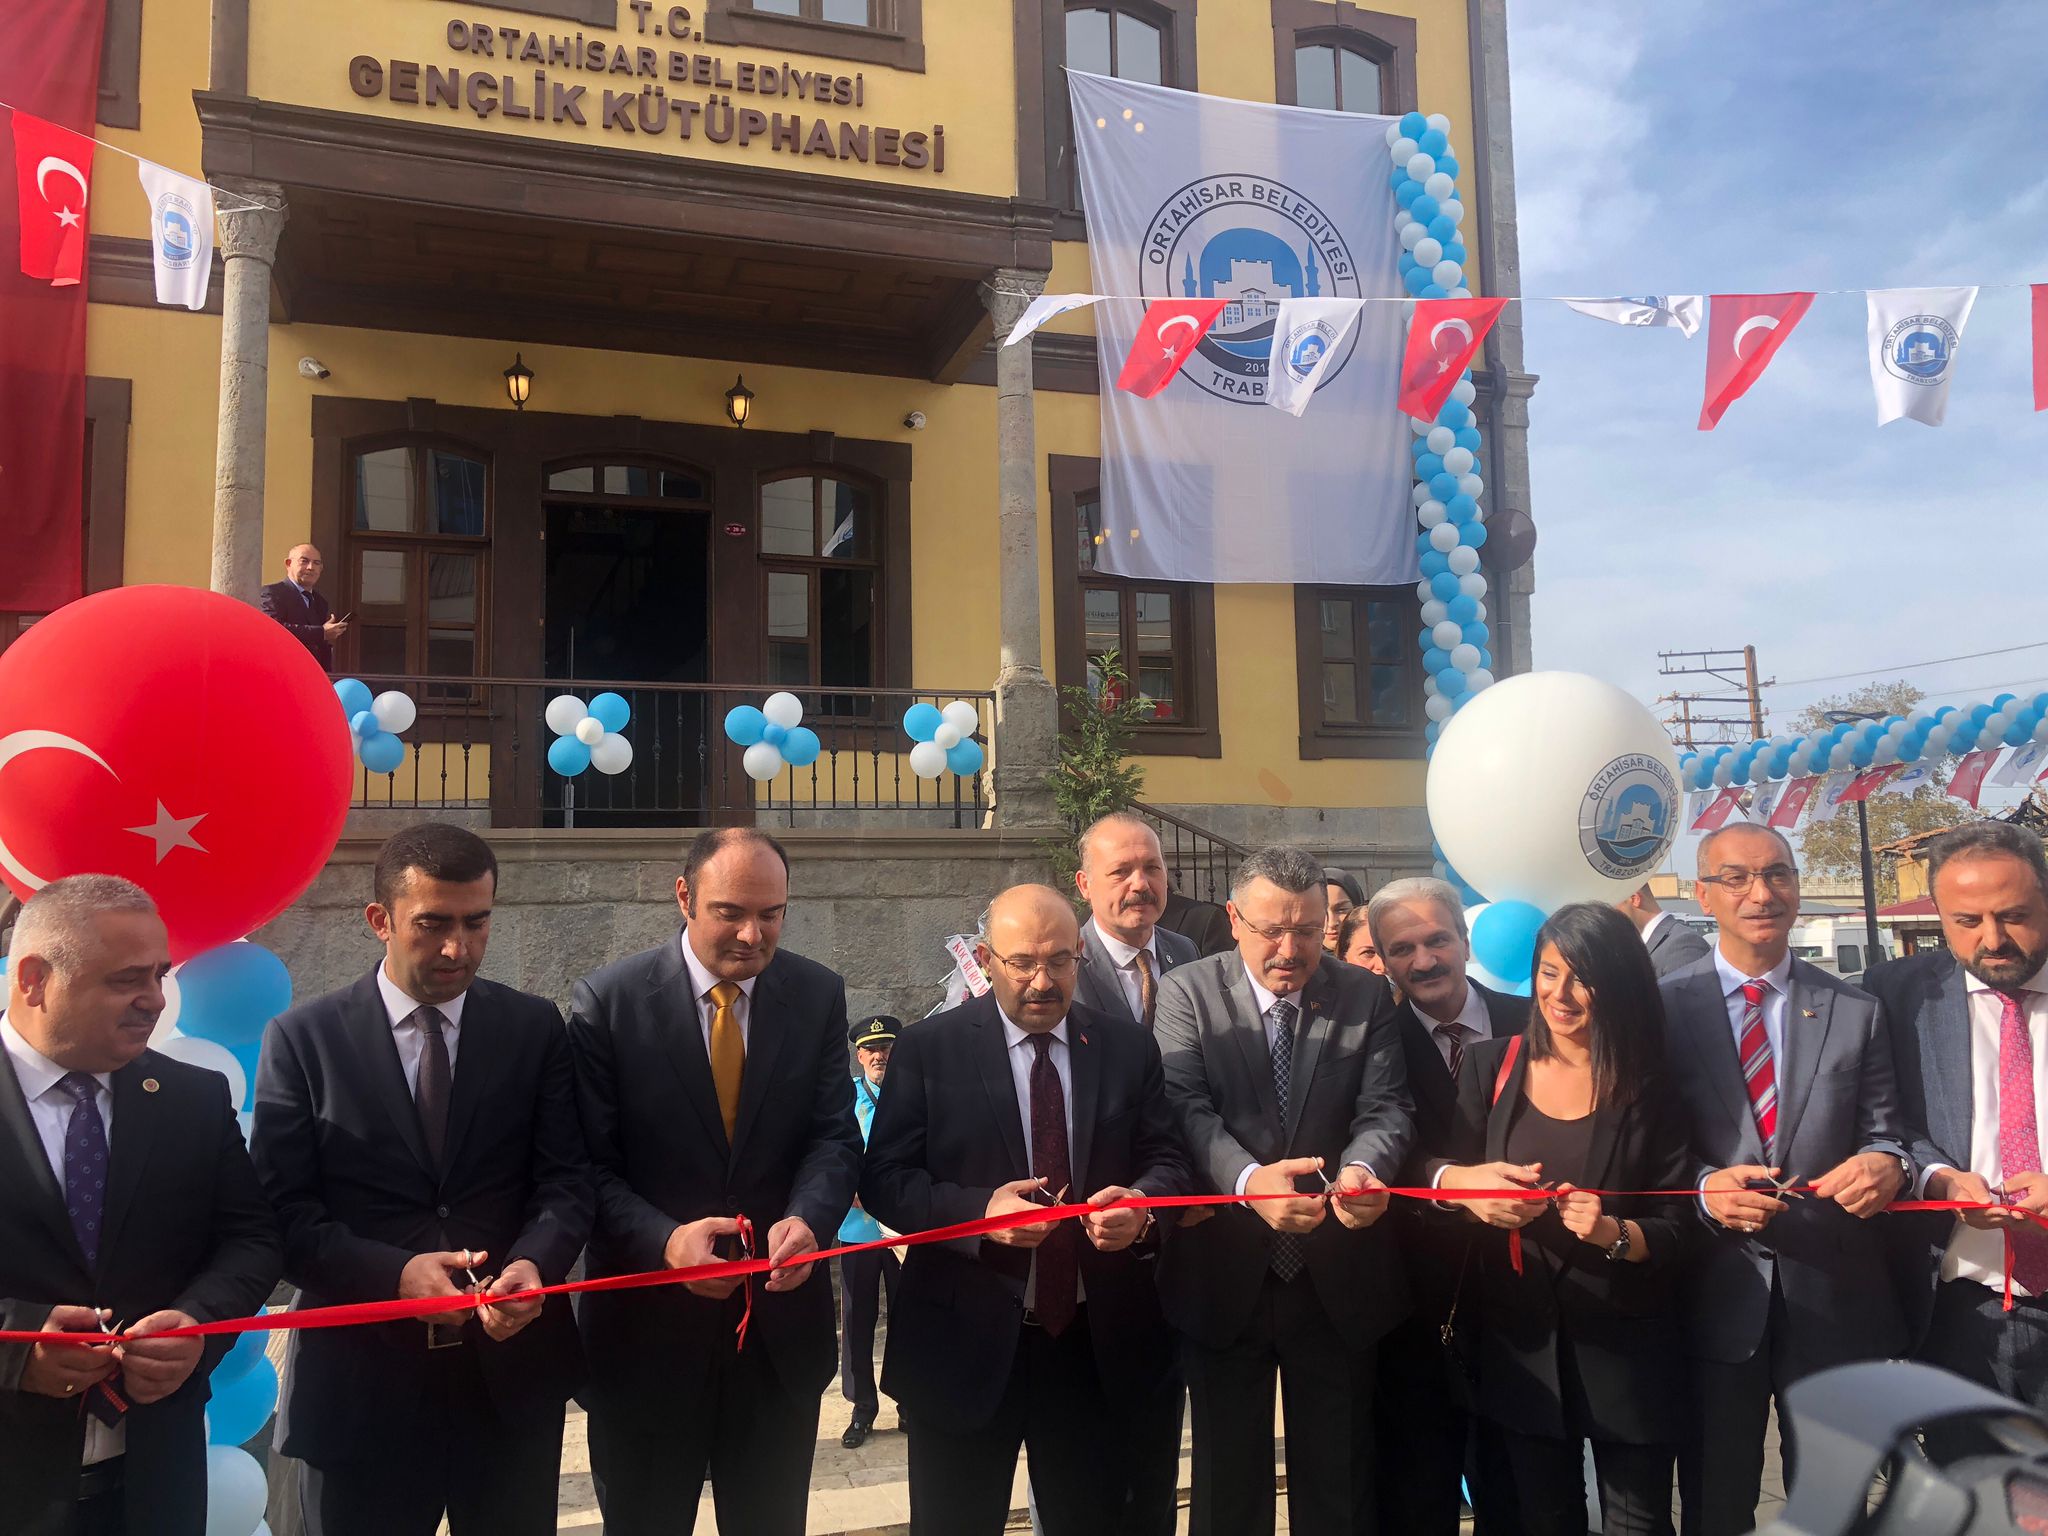  Karadeniz'in ilk dijital kütüphanesi Trabzon'da açıldı!